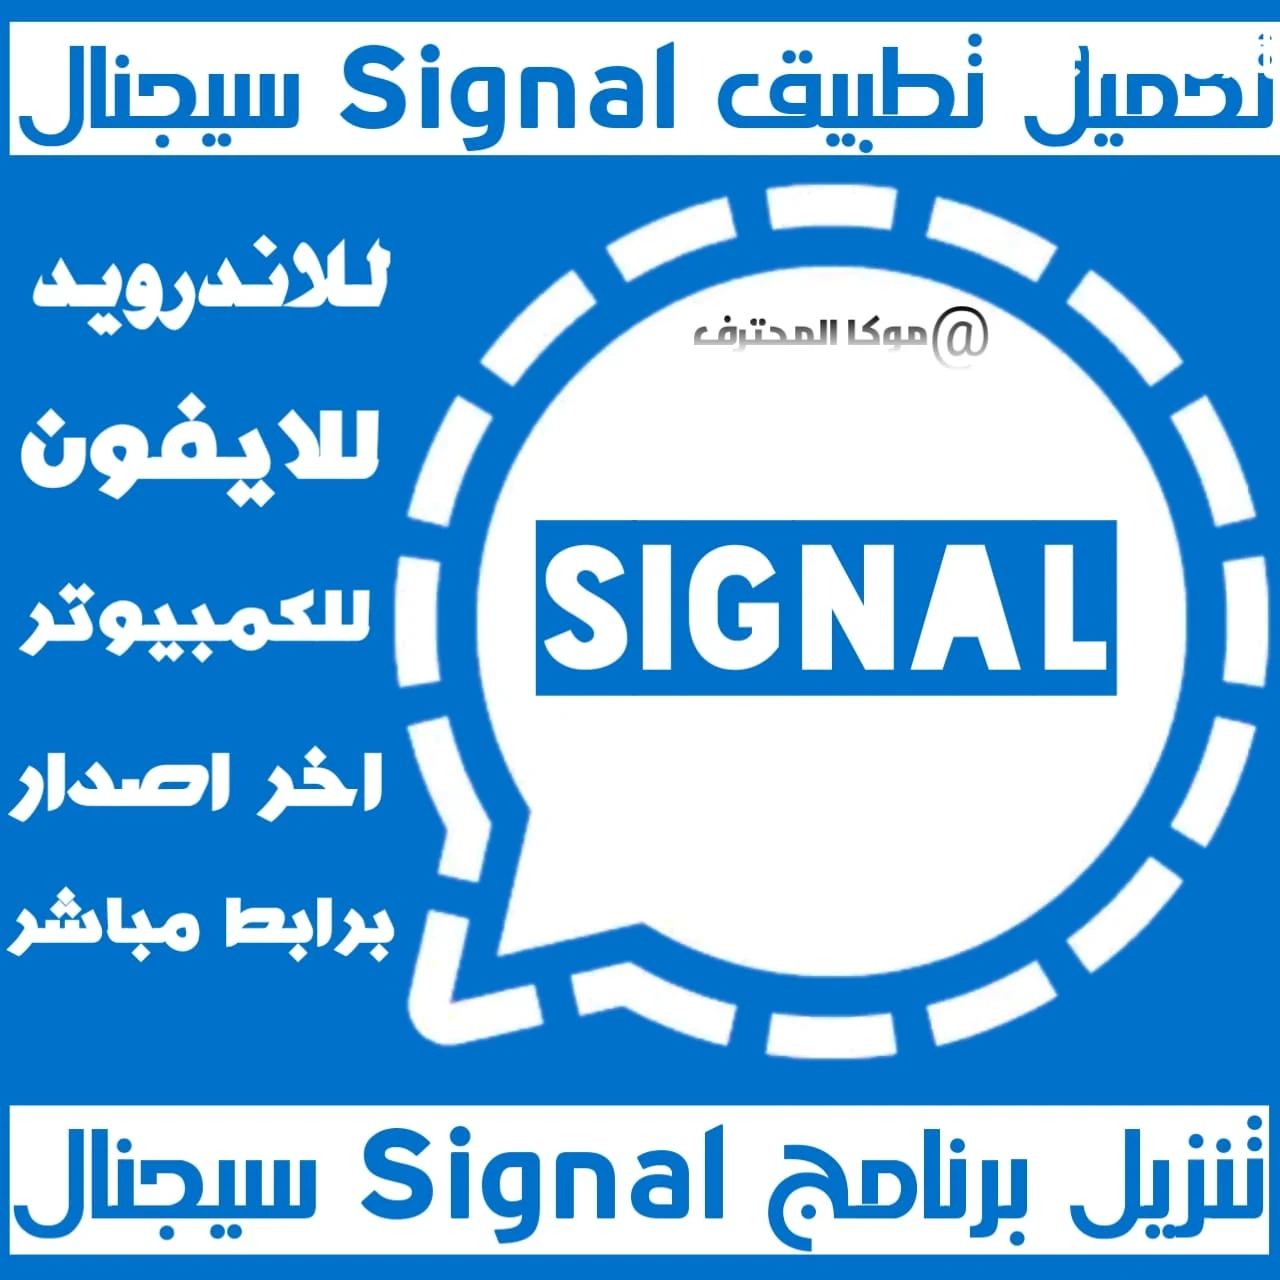 تحميل تطبيق سيجنال اخر اصدار Download signal apk